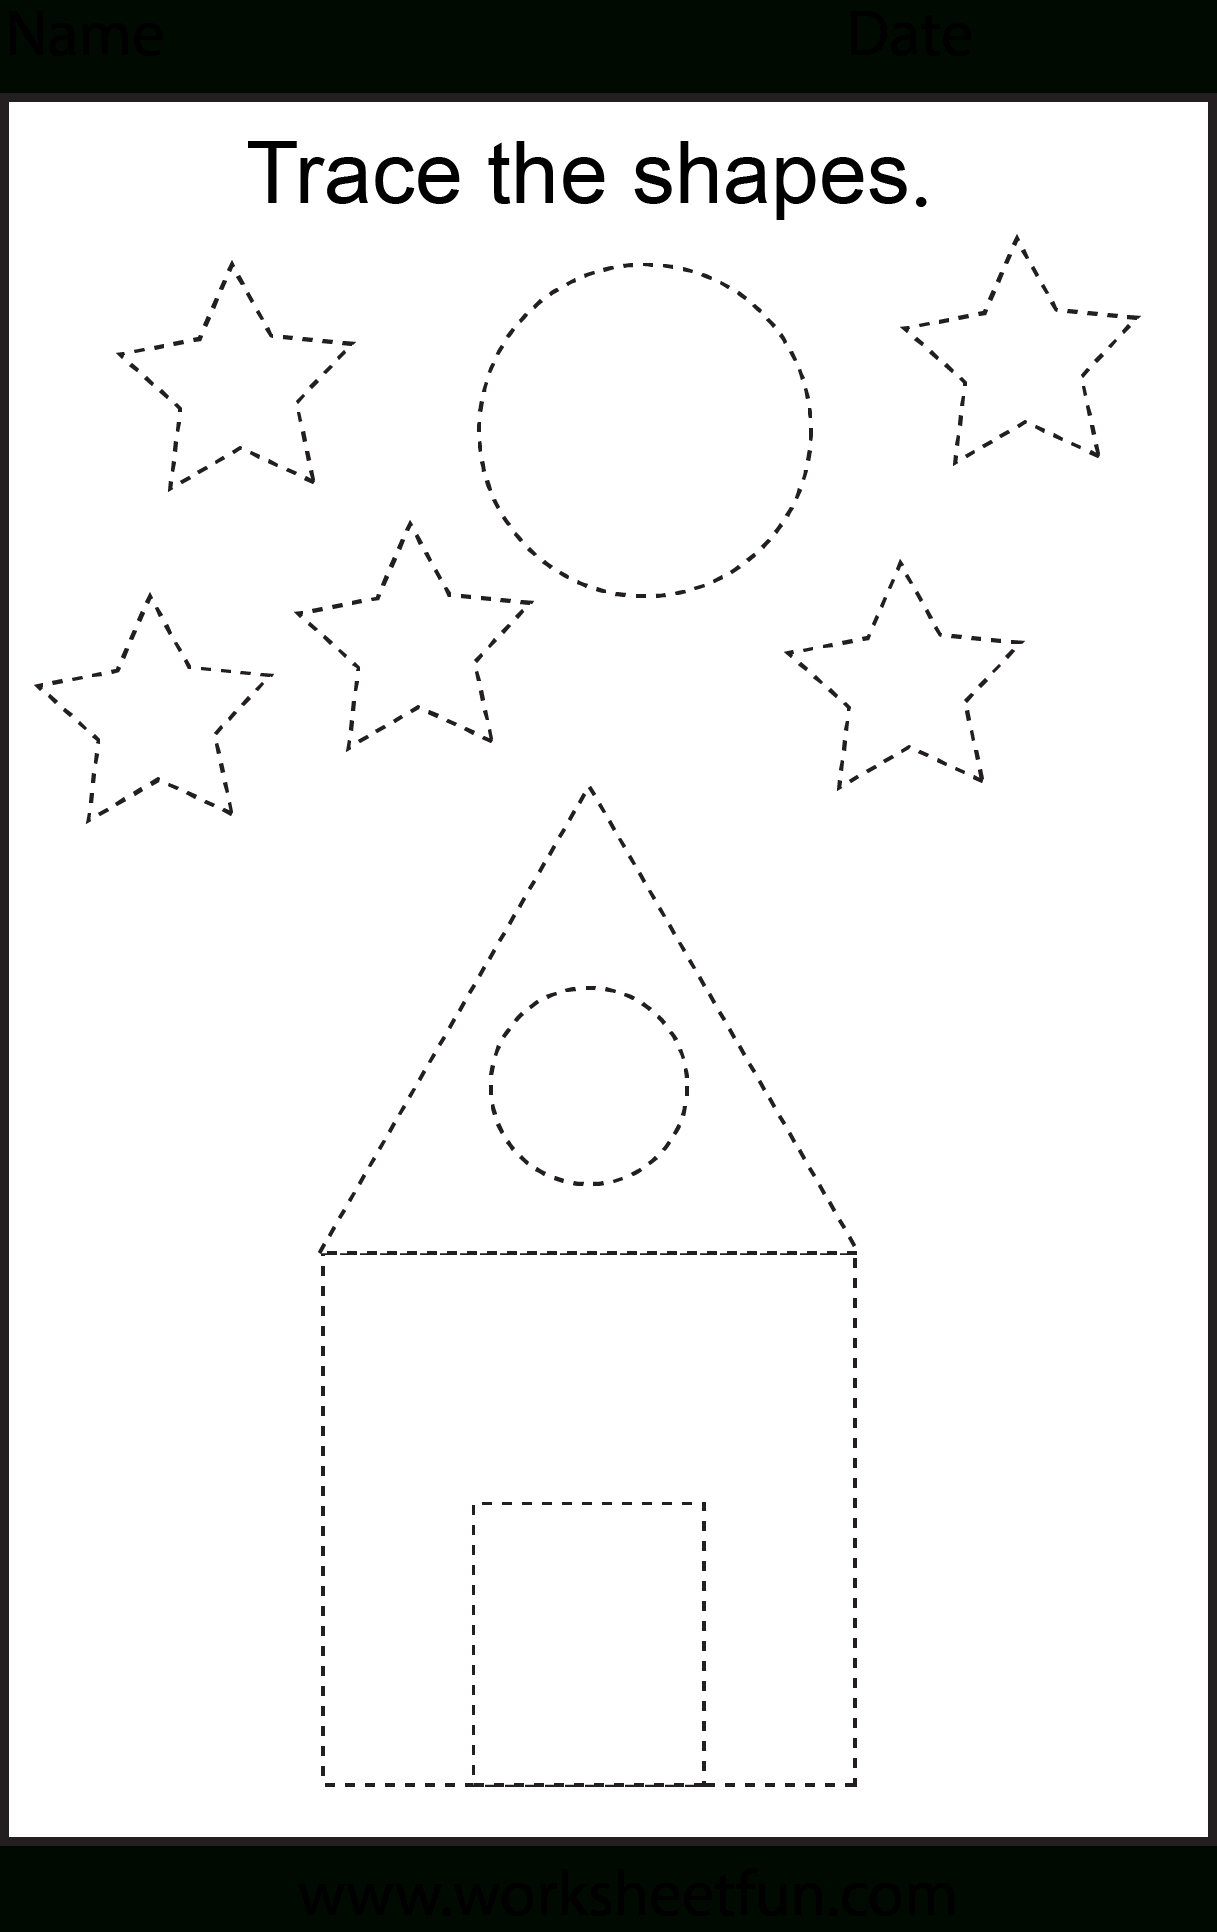 Free Printable Preschool Worksheets - This One Is Trace The Shapes - Free Printable Preschool Worksheets